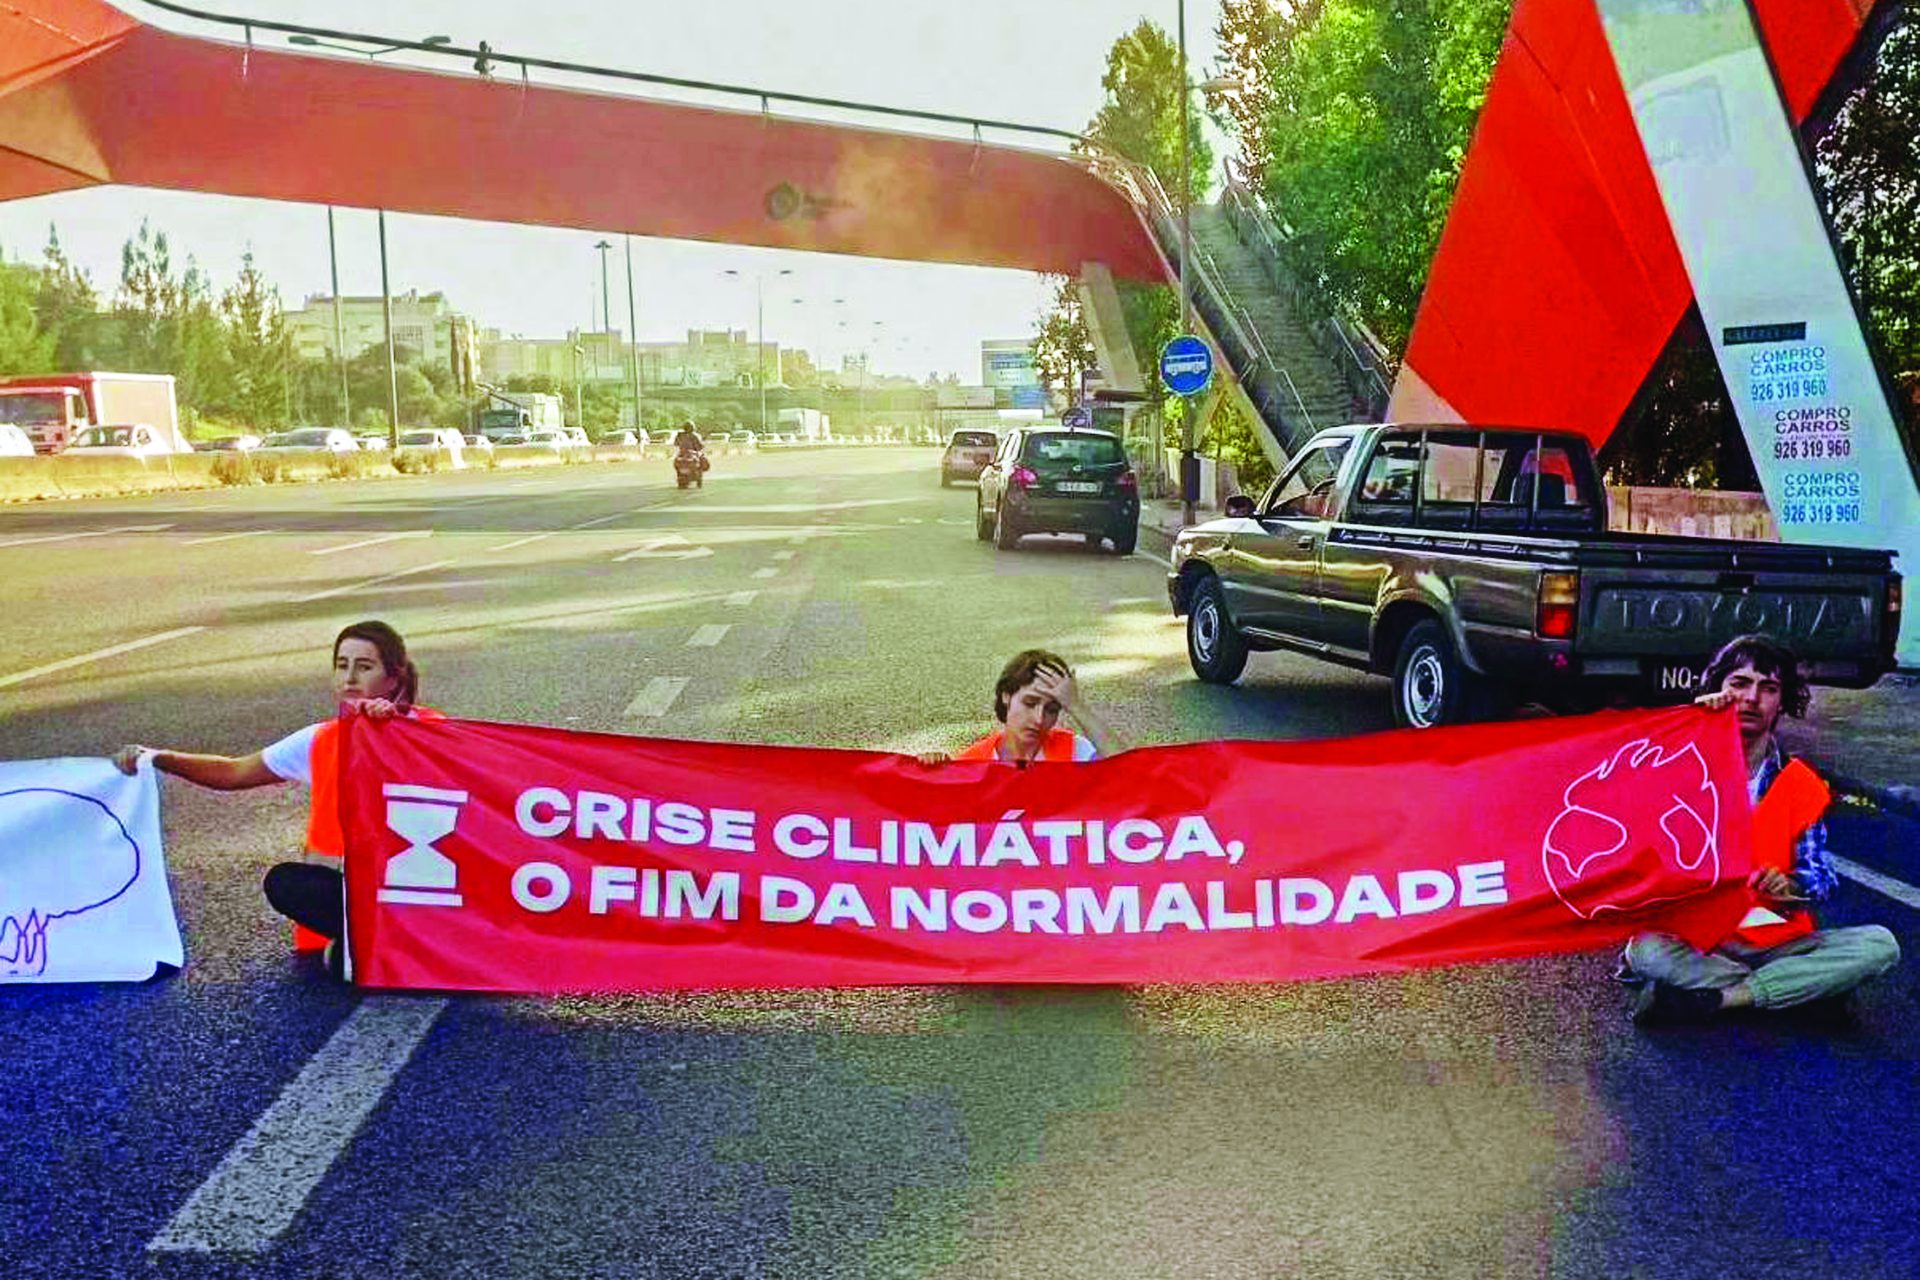 Climáximo: as propostas ultra-radicais dos ativistas do clima